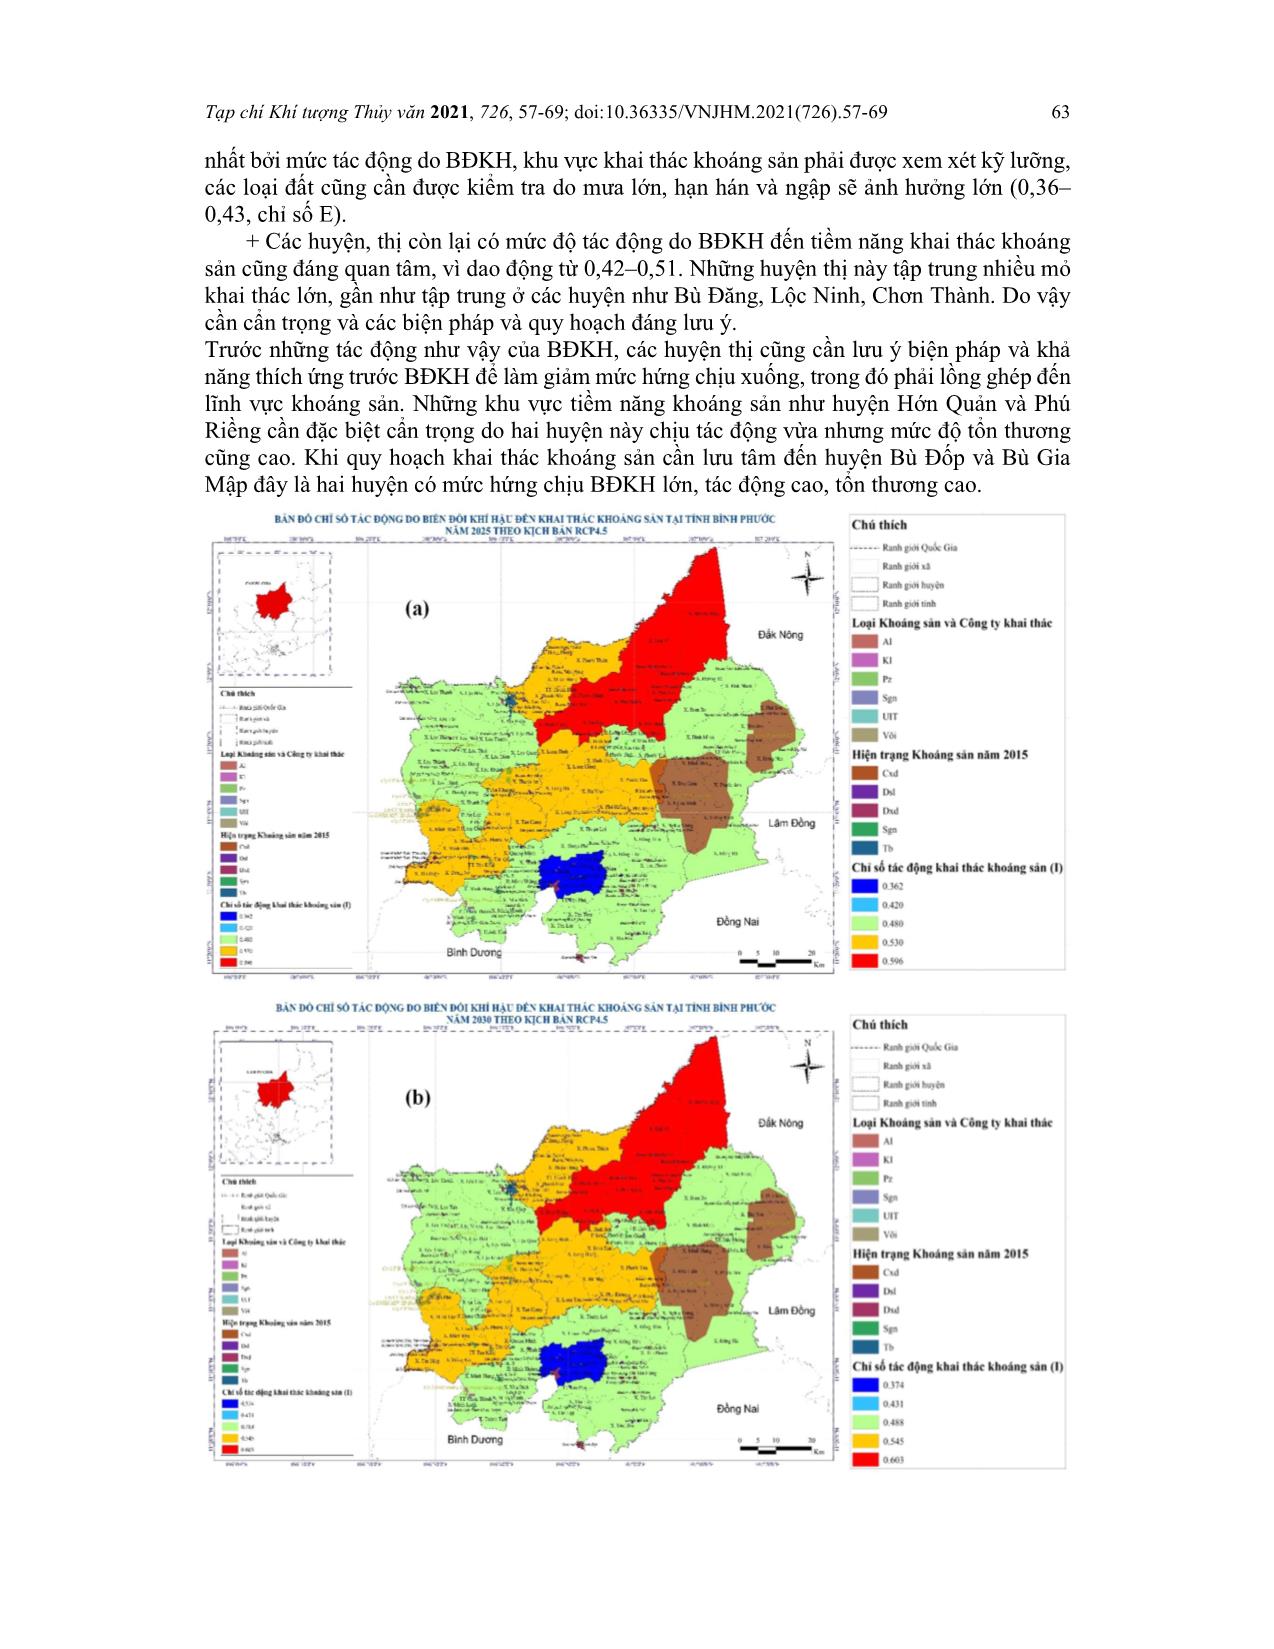 Đánh giá tác động của biến đổi khí hậu đến tiềm năng khai thác khoáng sản tỉnh Bình Phước trang 7